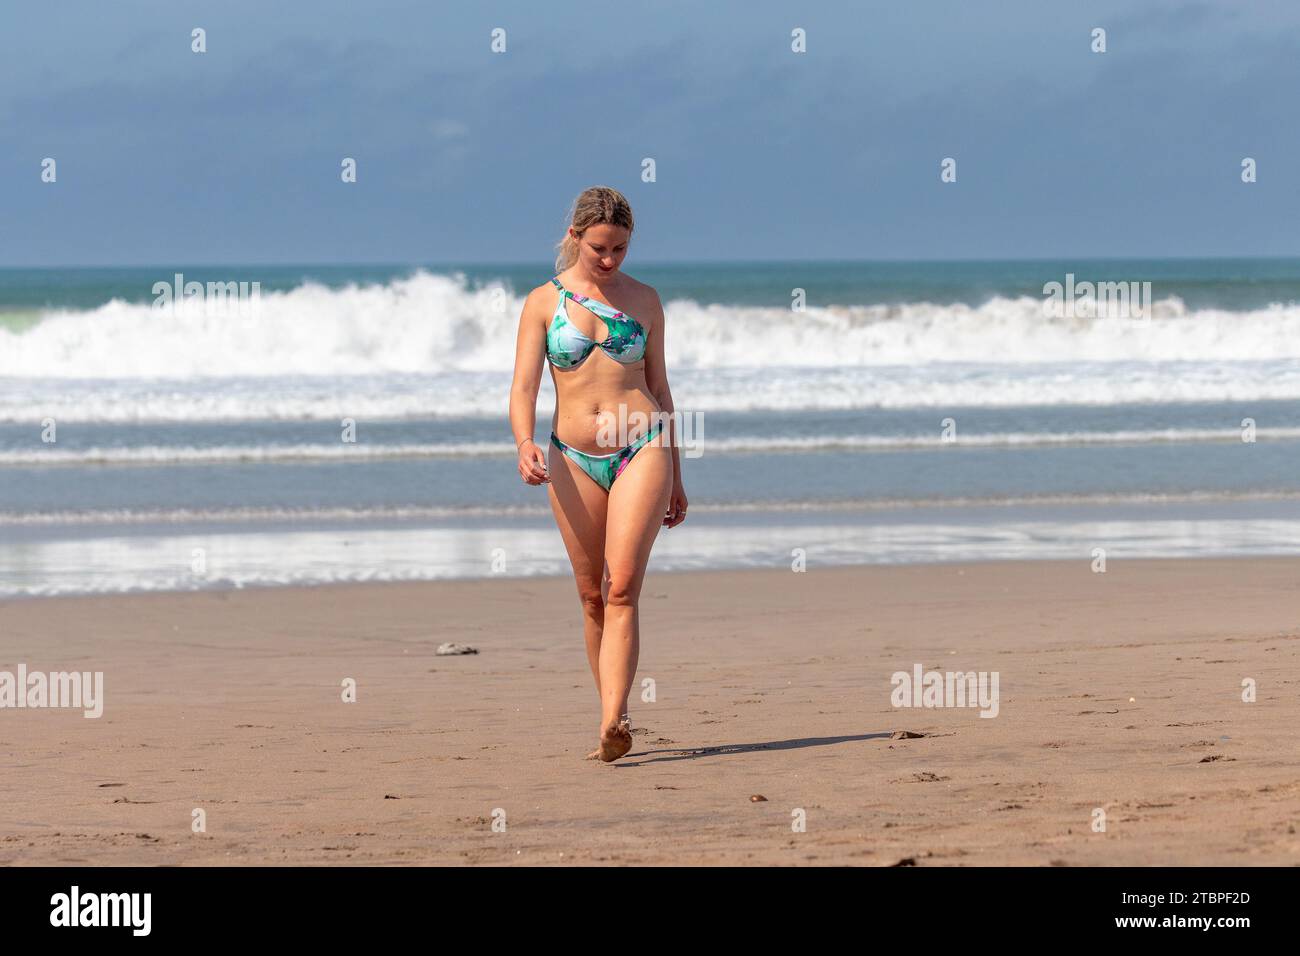 Una giovane donna sta camminando sulla spiaggia con grandi onde, Seminyak, Bali Island, Indonesia Foto Stock